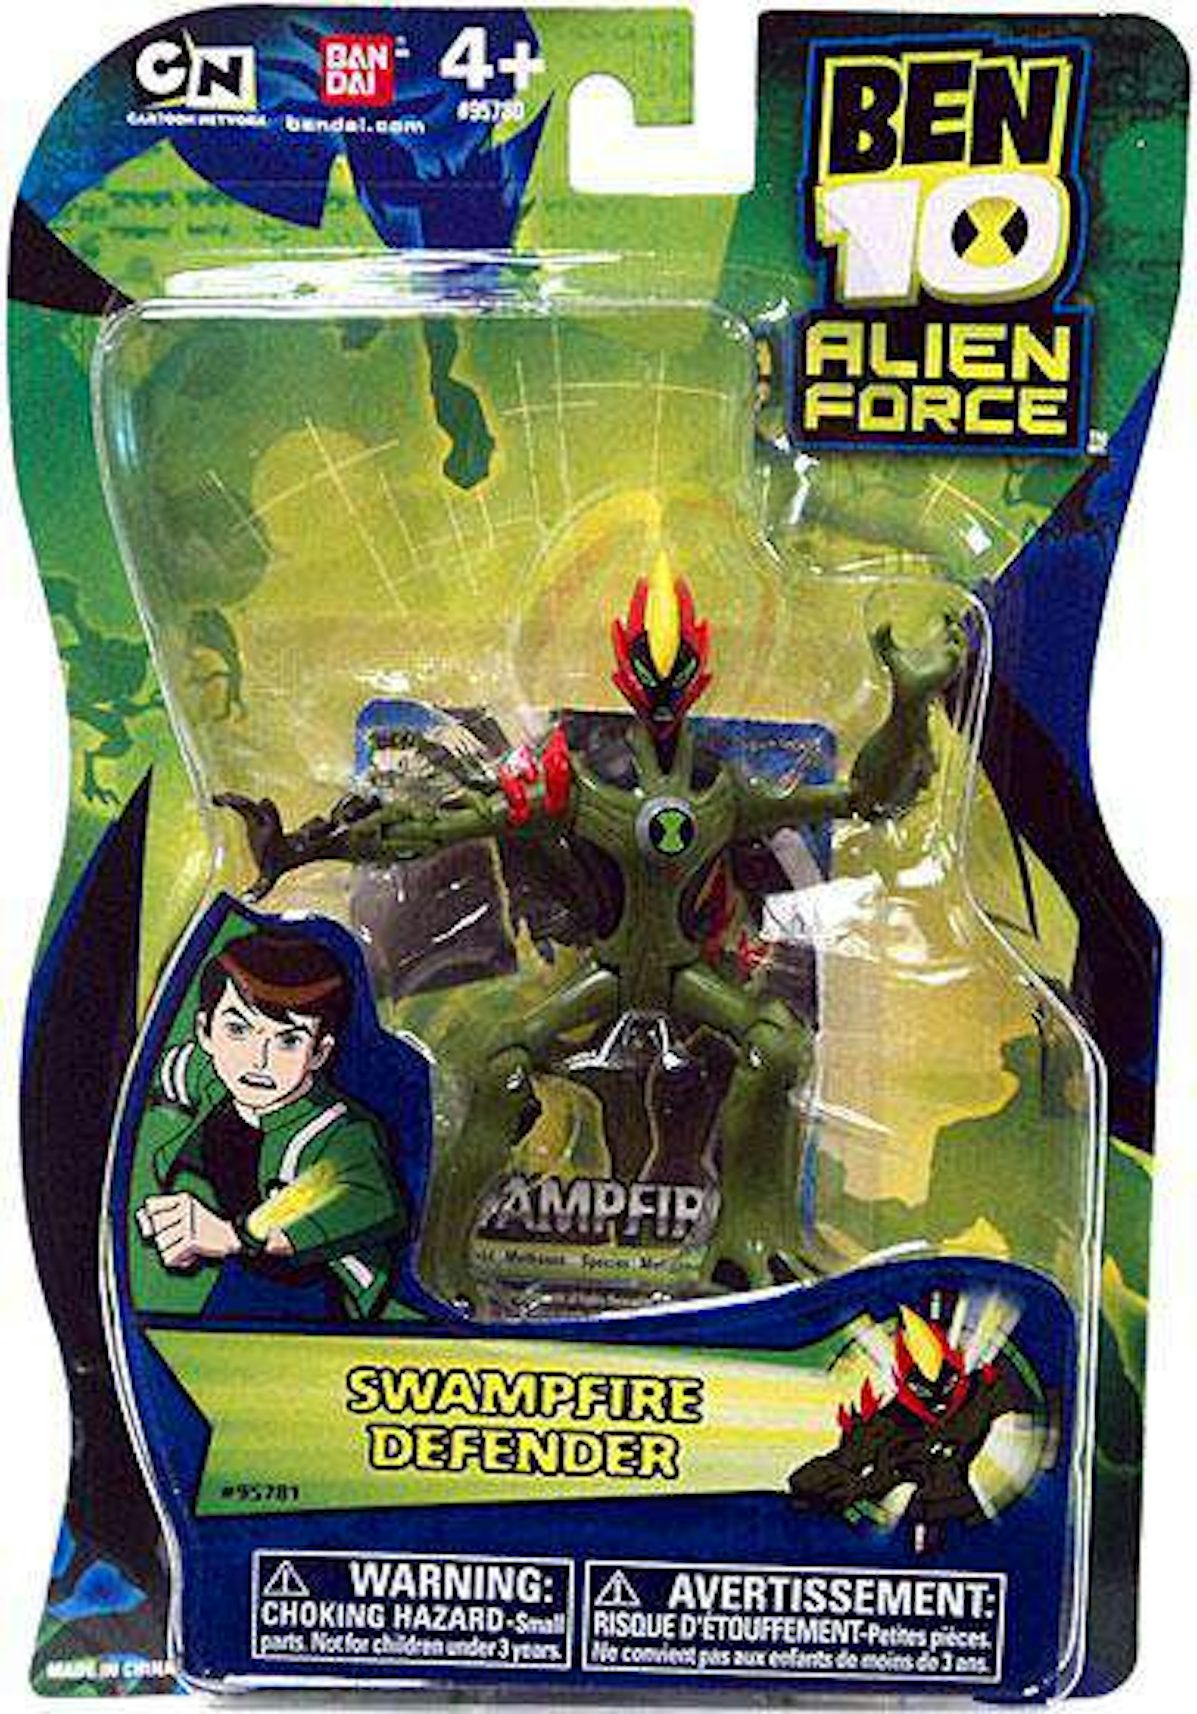 Alien X (Defender) - Ben 10 Alien Force action figure